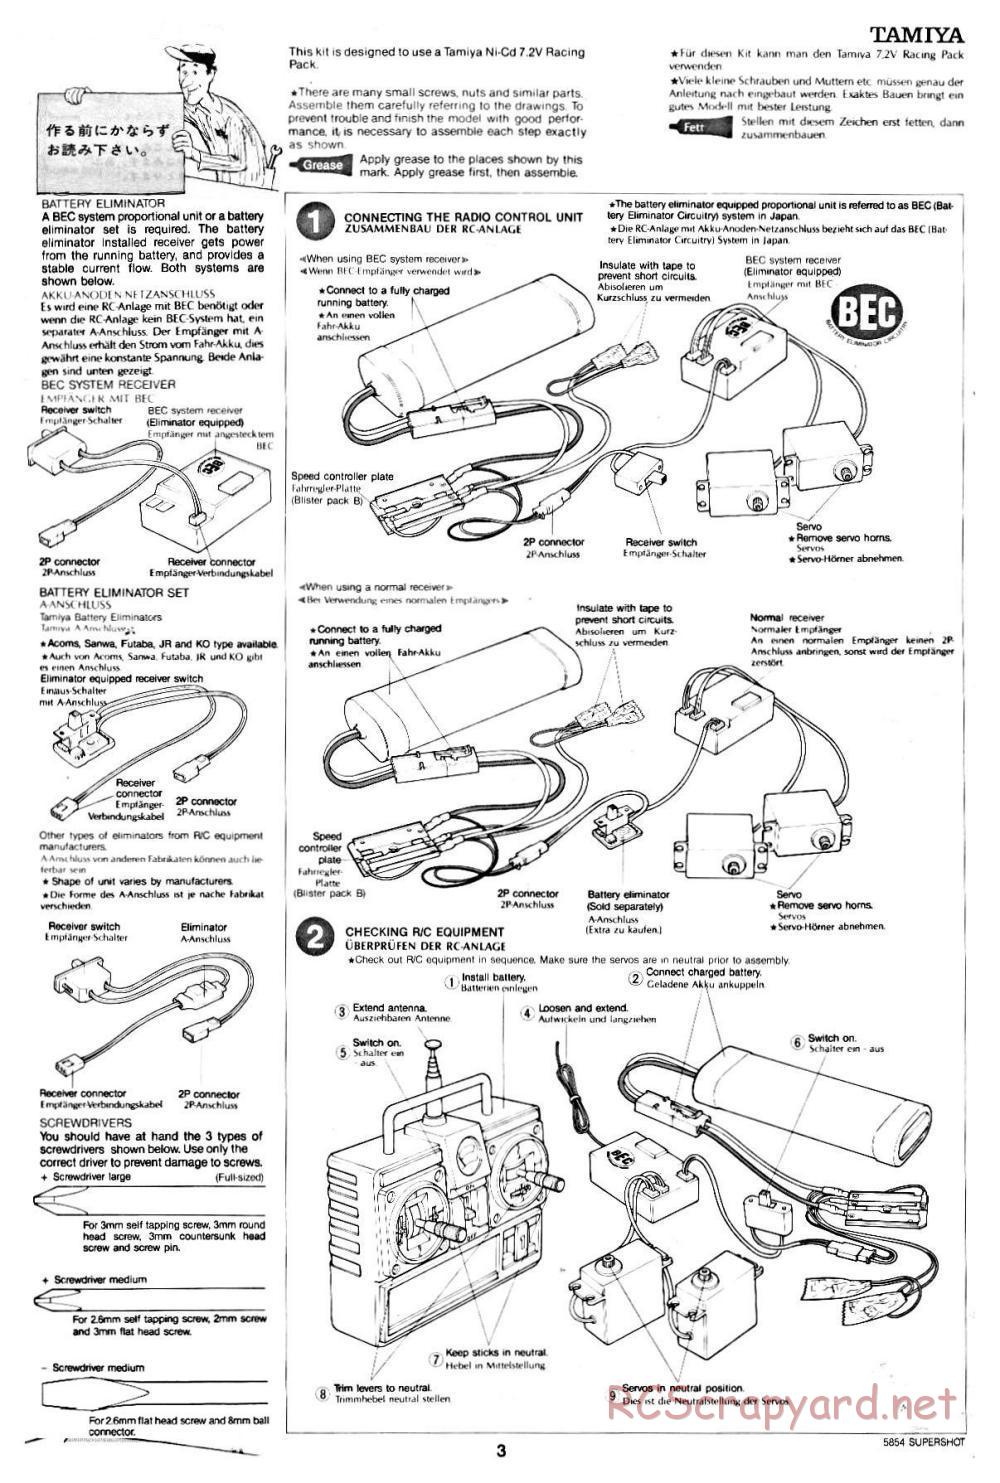 Tamiya - Supershot - 58054 - Manual - Page 3